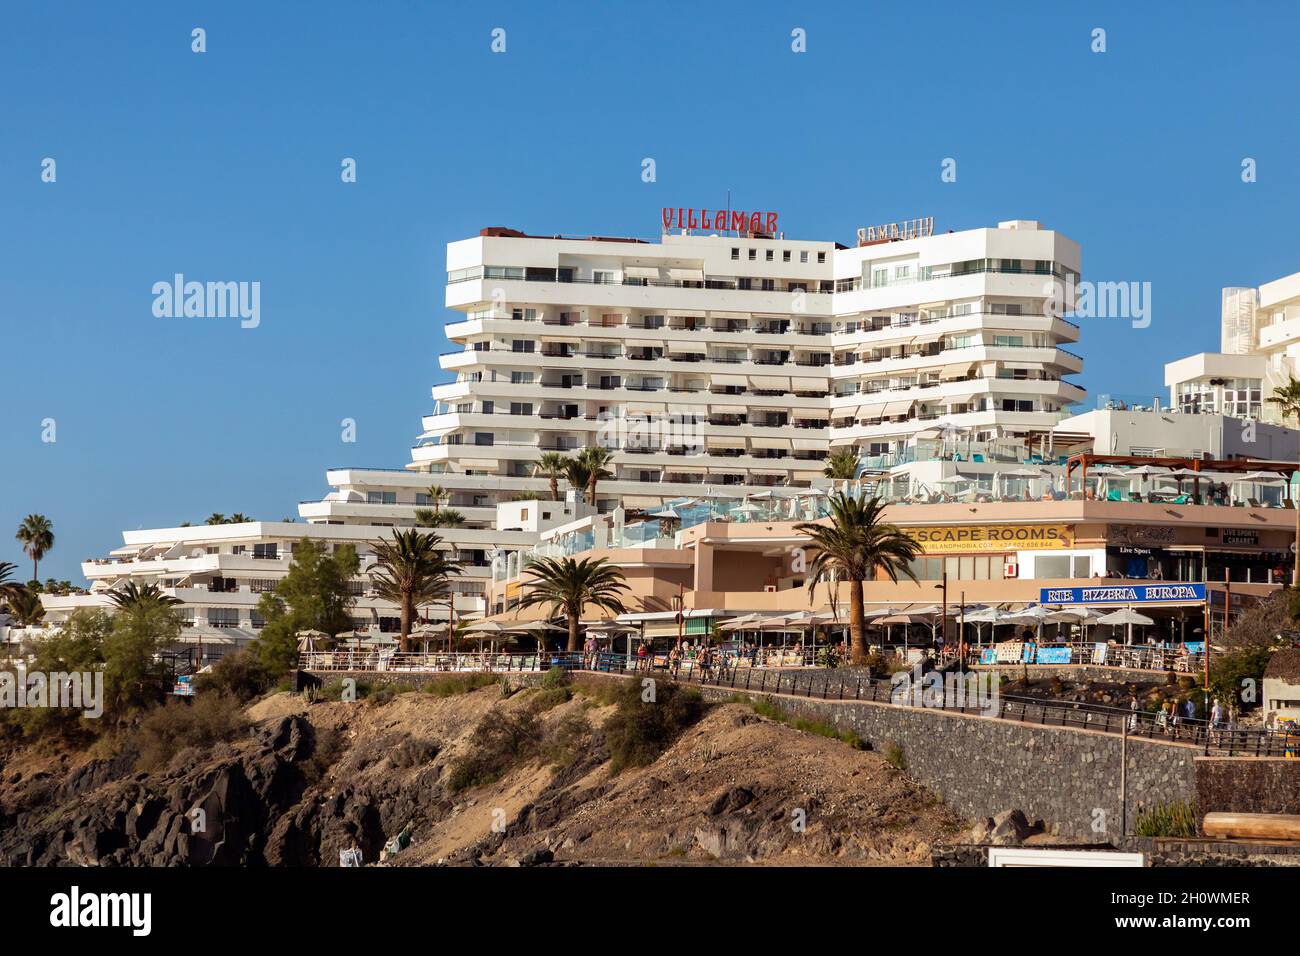 Apartamentos Club Villamar en Tenerife Foto de stock